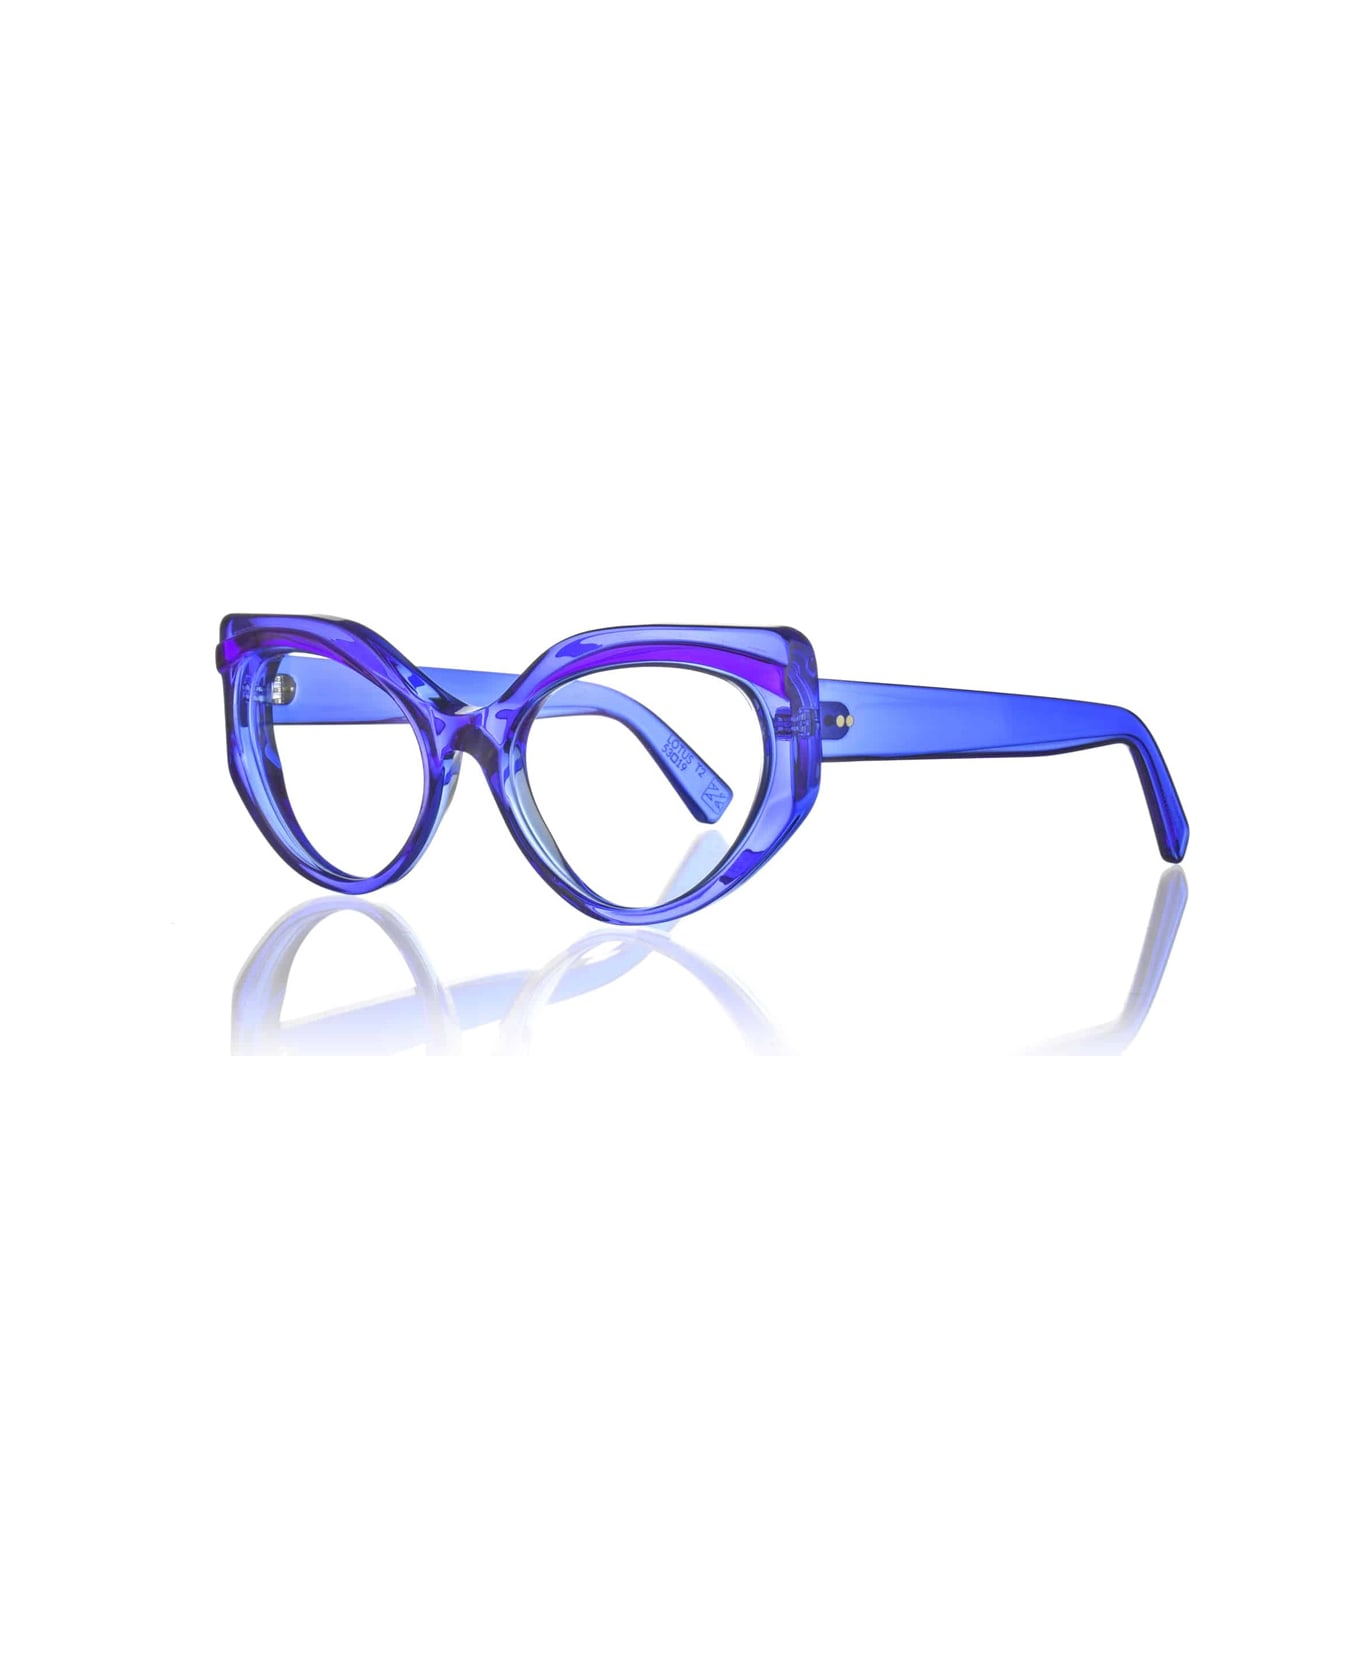 Kirk & Kirk Lotus T2 Blue Moon Glasses - Blu